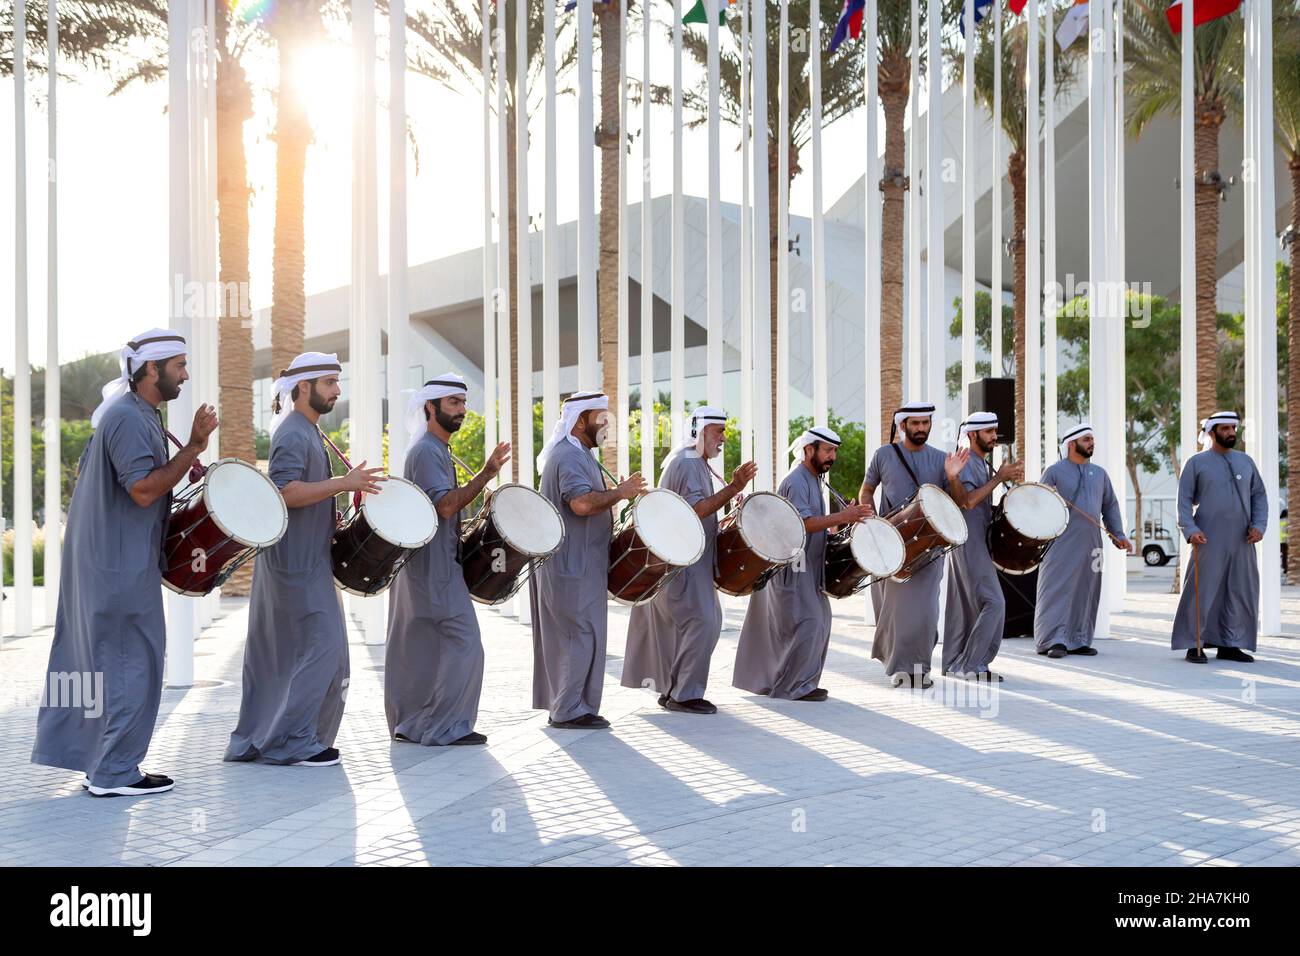 Dubai, VAE - 15. November 2021: Emirati Willkommenstanz um Expo2020 Uhr. Energiegeladene authentische Darbietung auf dem 2020 Plaza. Stockfoto